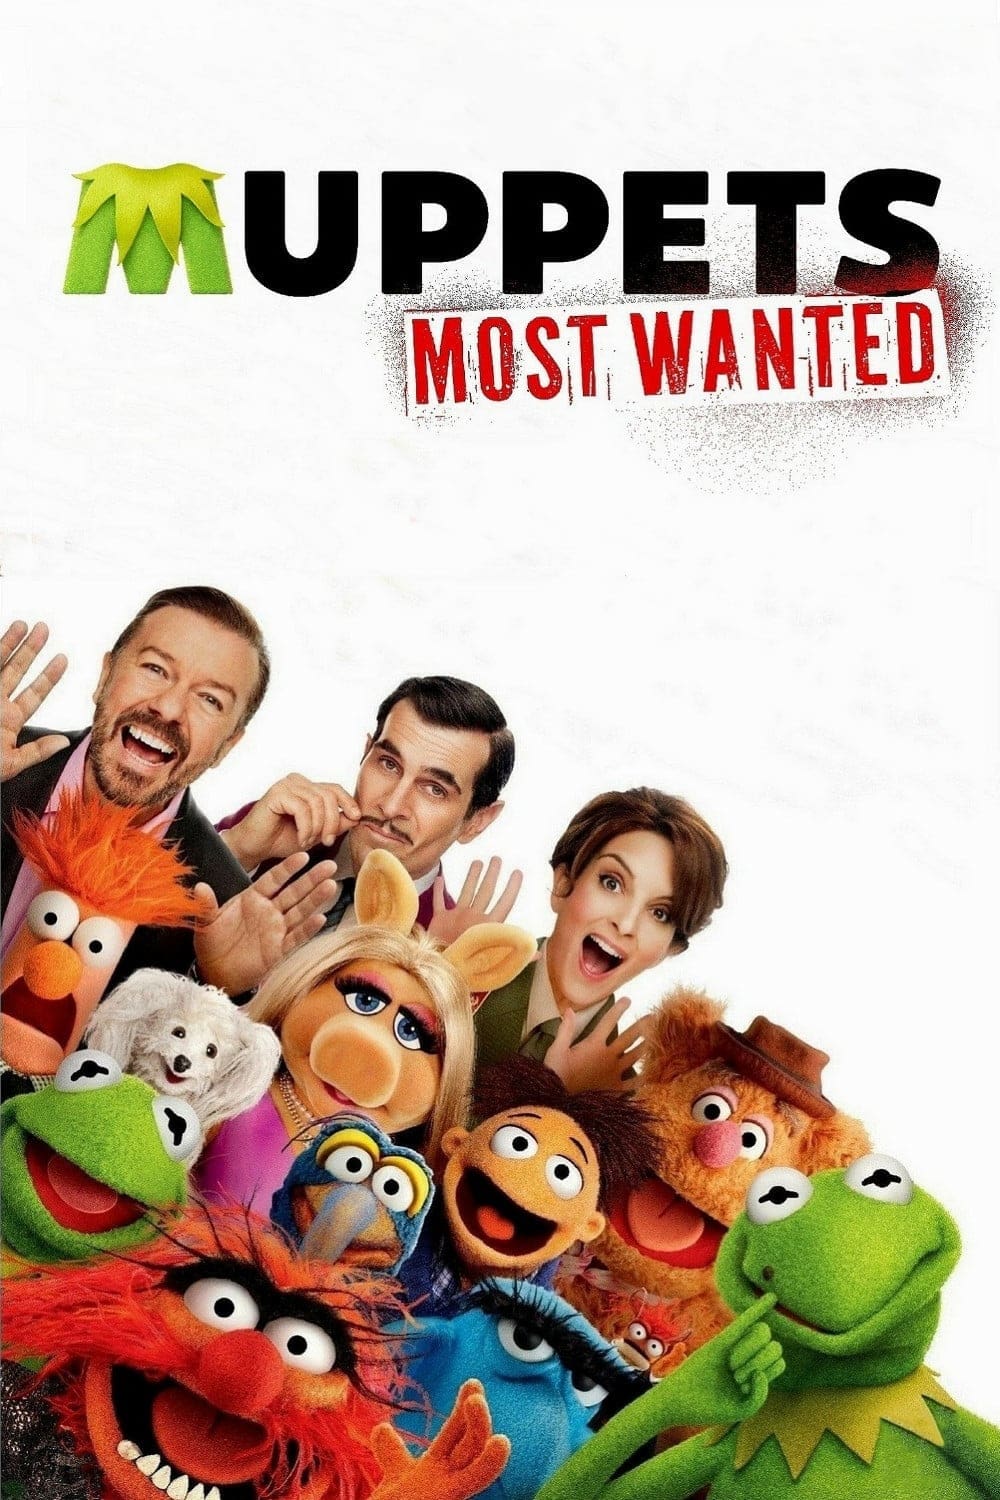 El tour de los Muppets (2014)